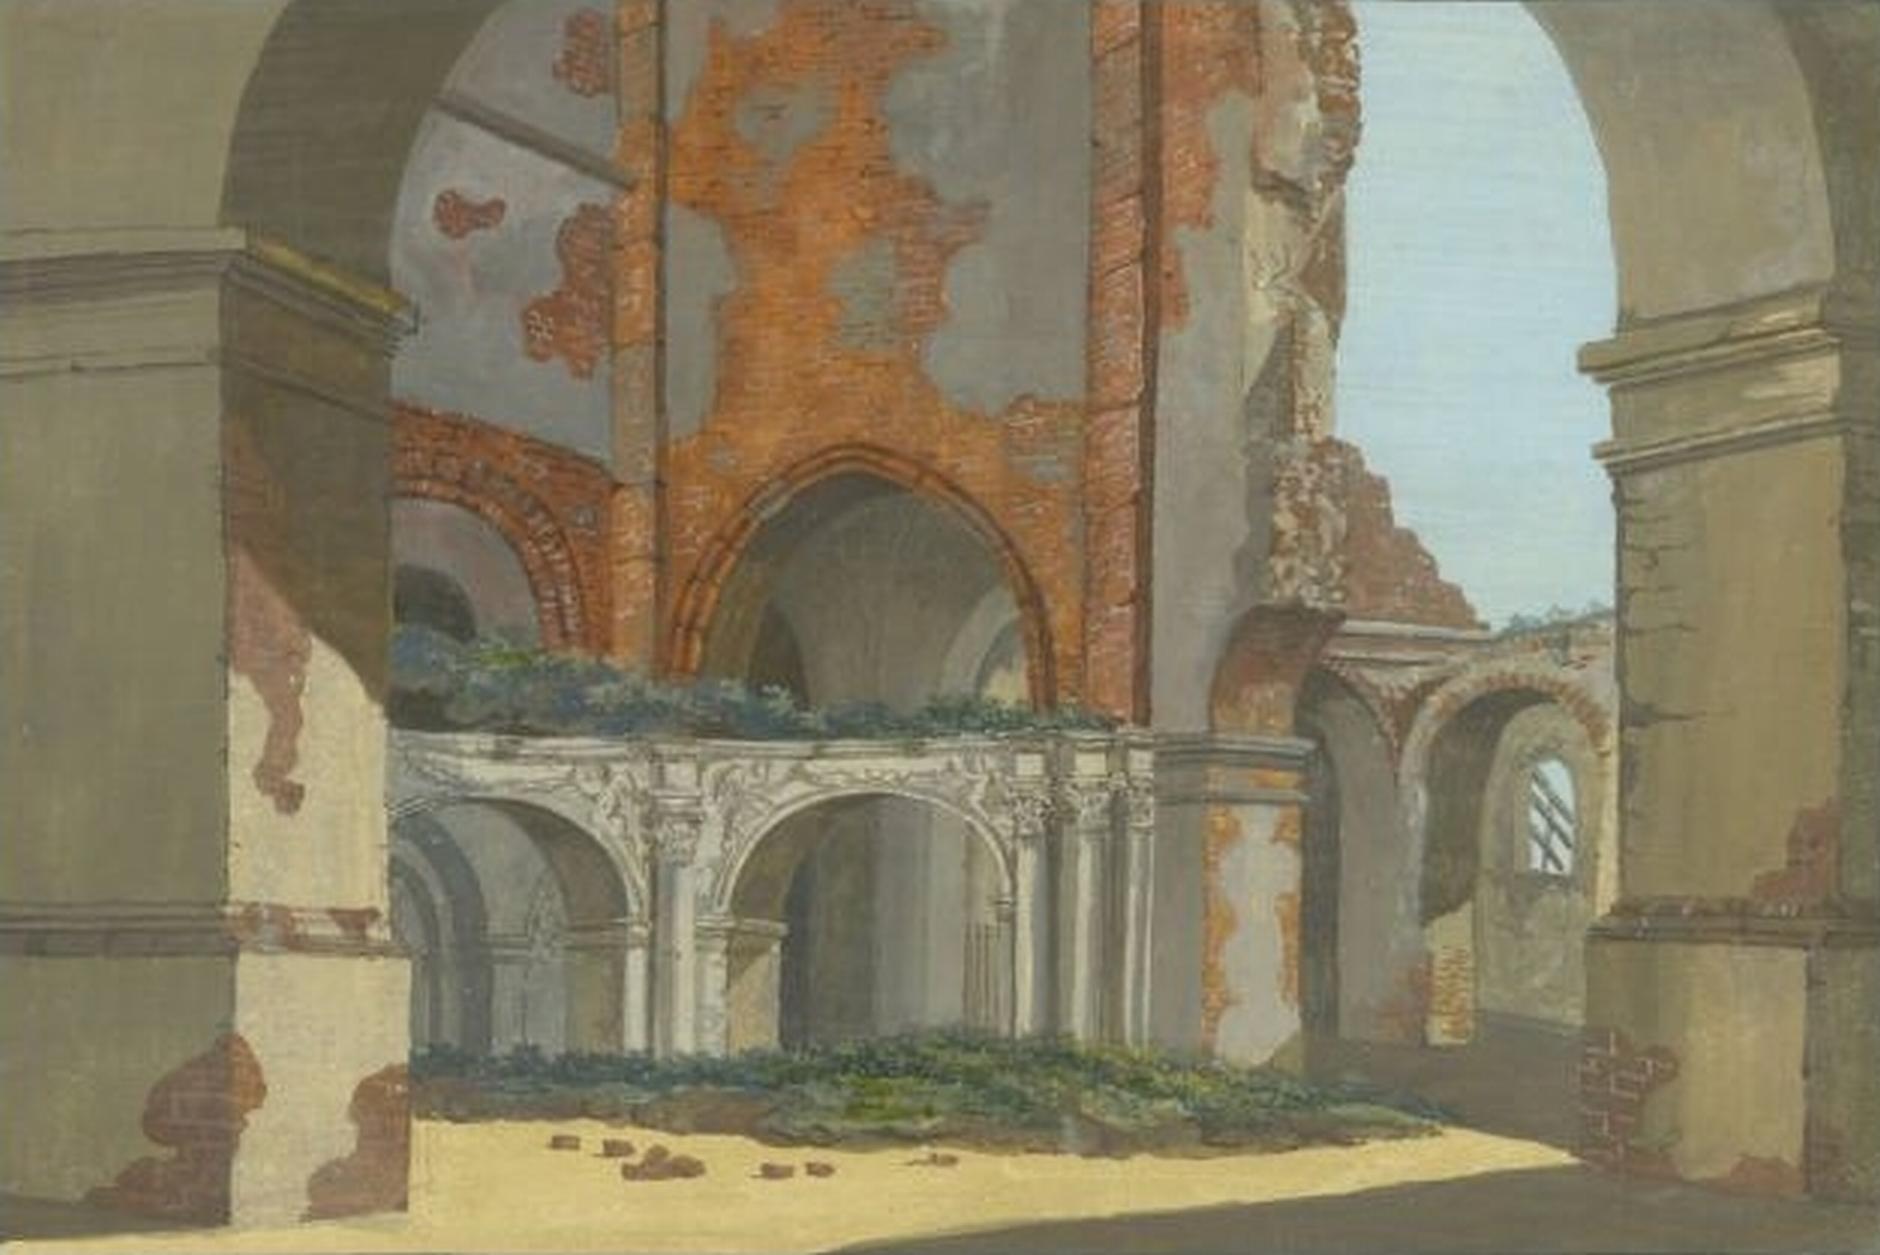 (1798) Ruiny kościoła farnego św. Marii Magdaleny. Wnętrze z widokiem na partię wieżową.